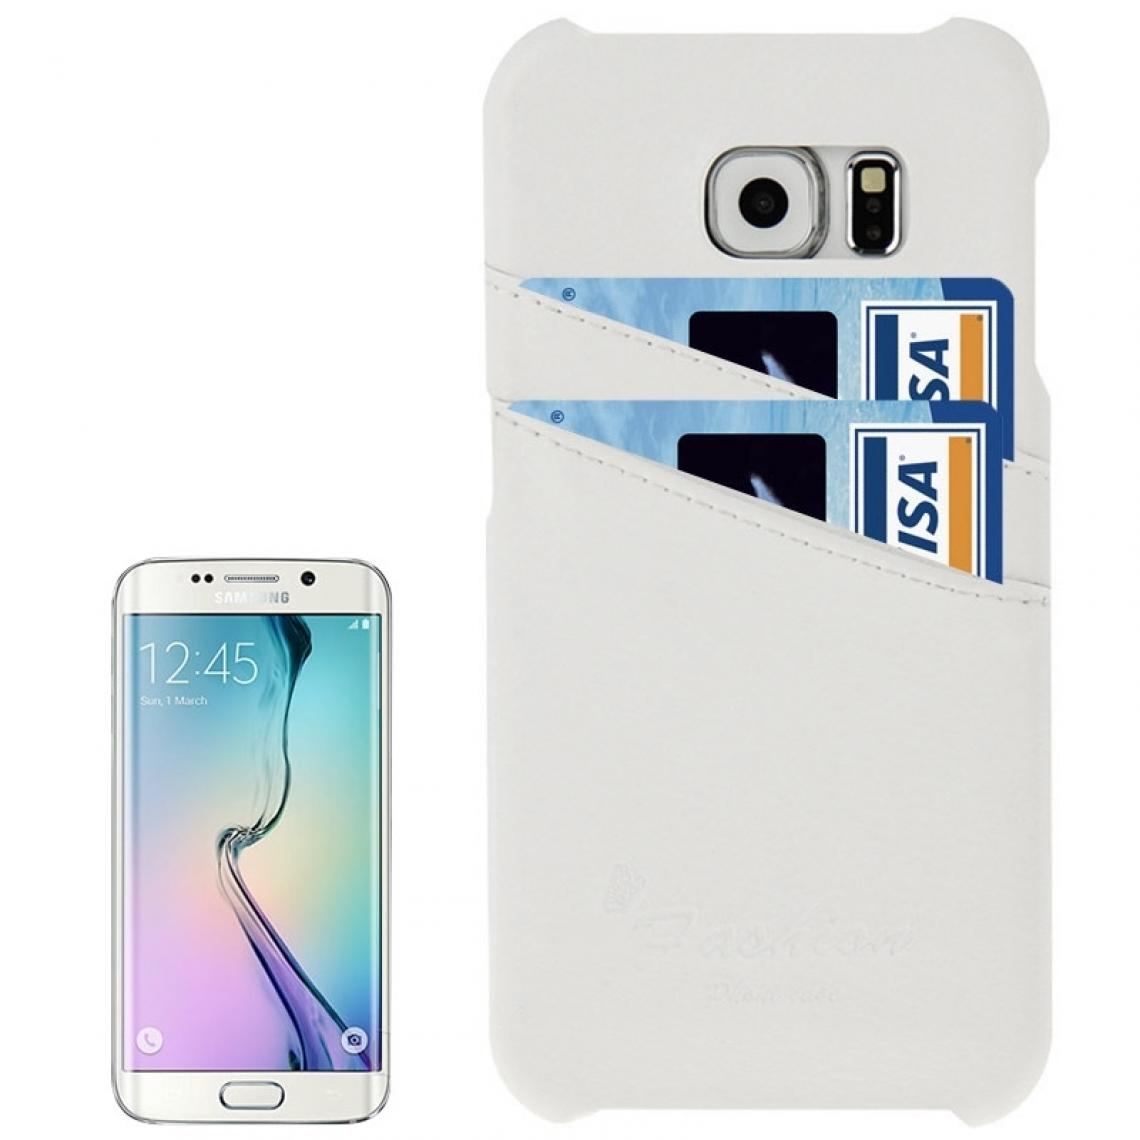 Wewoo - Housse Pour Galaxy S6 Edge / G925 Litchi Texture de protection en cuir véritable avec fentes cartes & logo de la mode blanc - Coque, étui smartphone